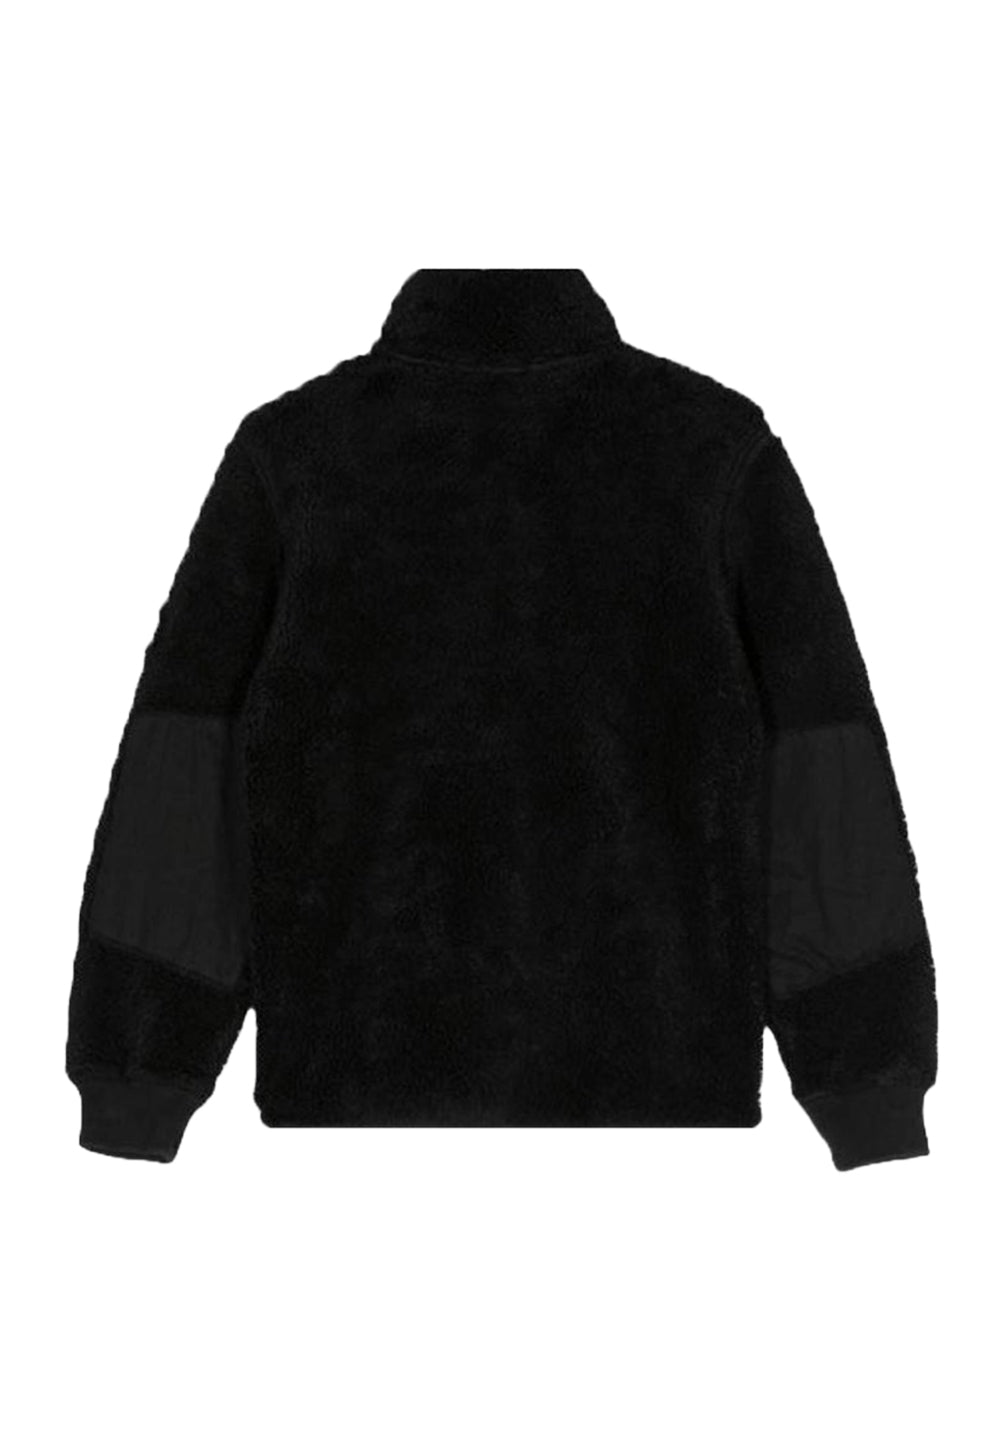 Black teddy jacket for boys